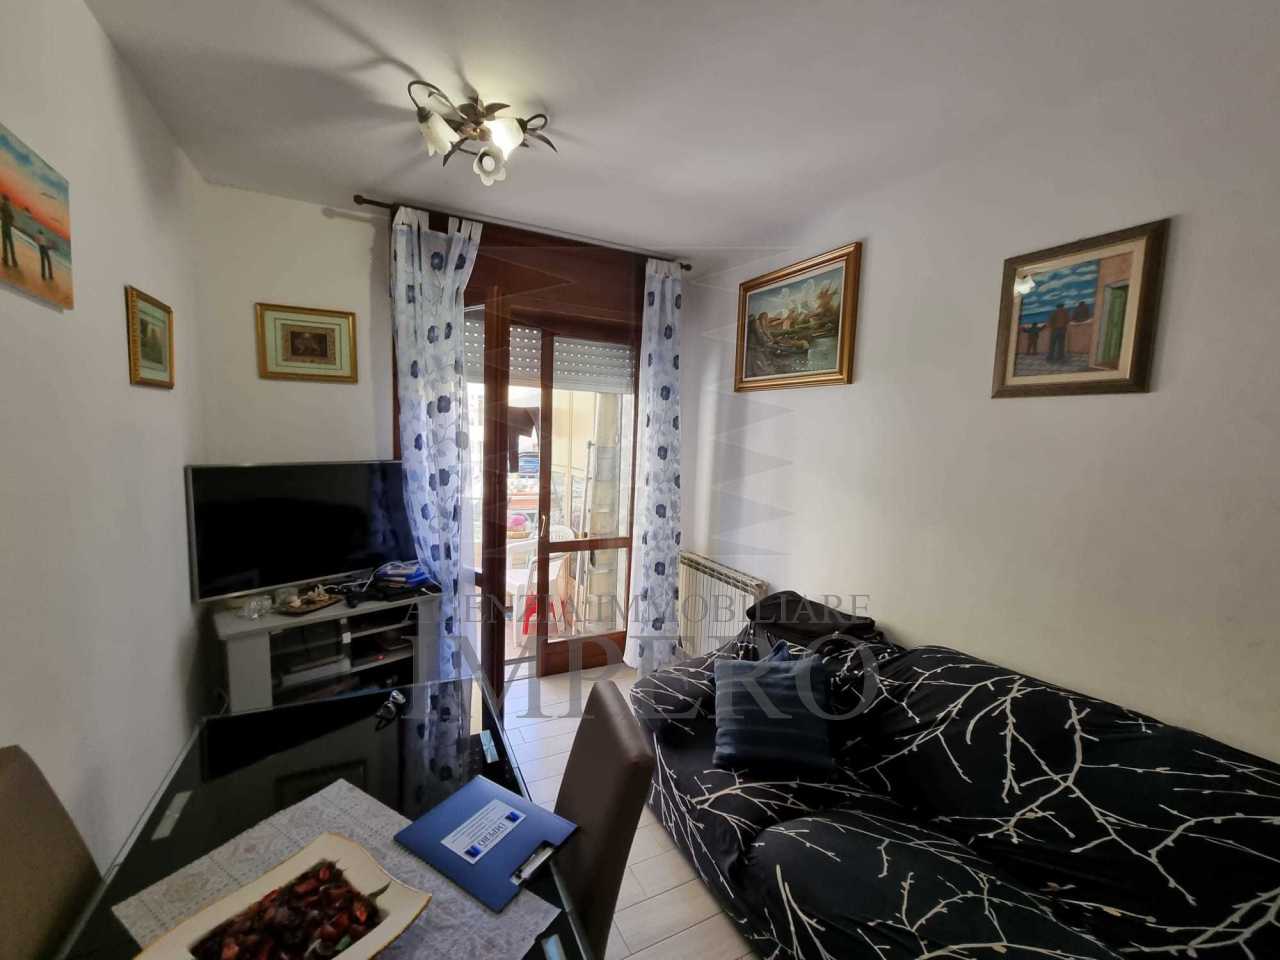 Appartamento in vendita a Ventimiglia, 3 locali, prezzo € 100.000 | PortaleAgenzieImmobiliari.it